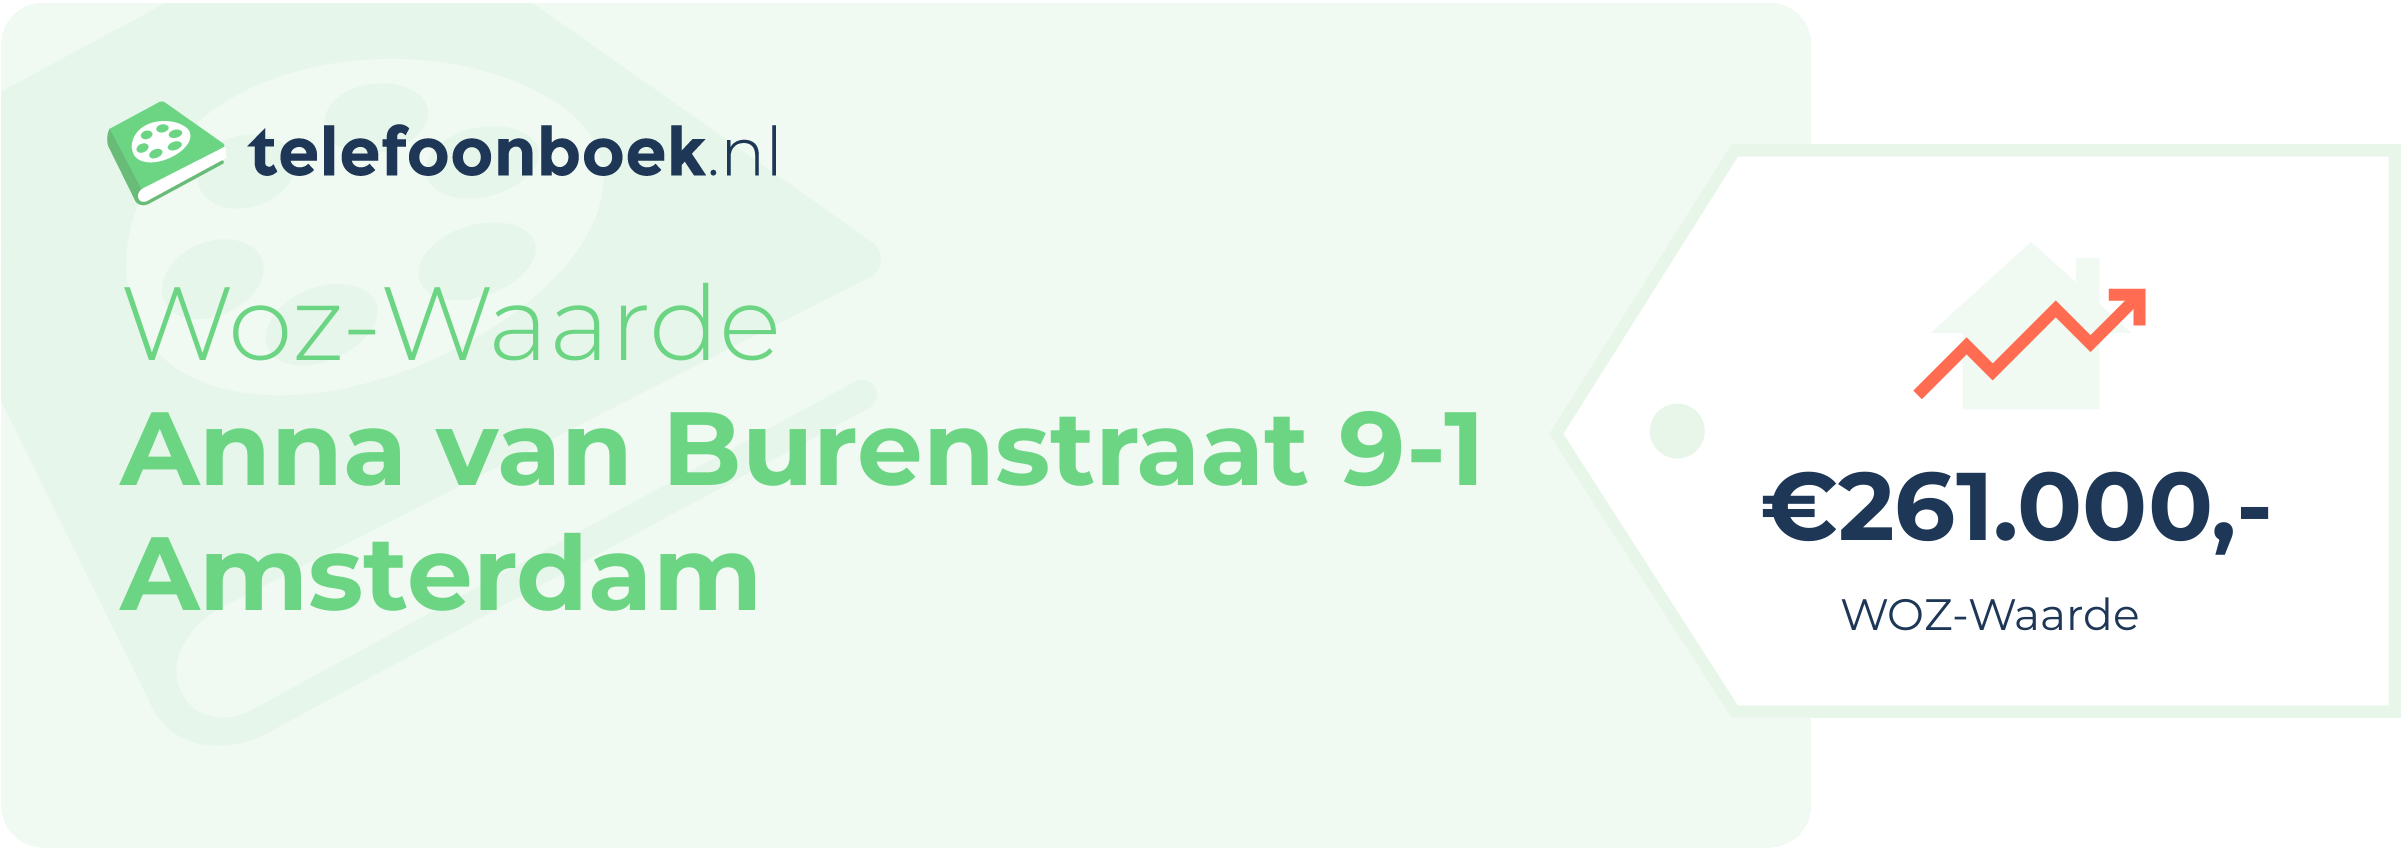 WOZ-waarde Anna Van Burenstraat 9-1 Amsterdam